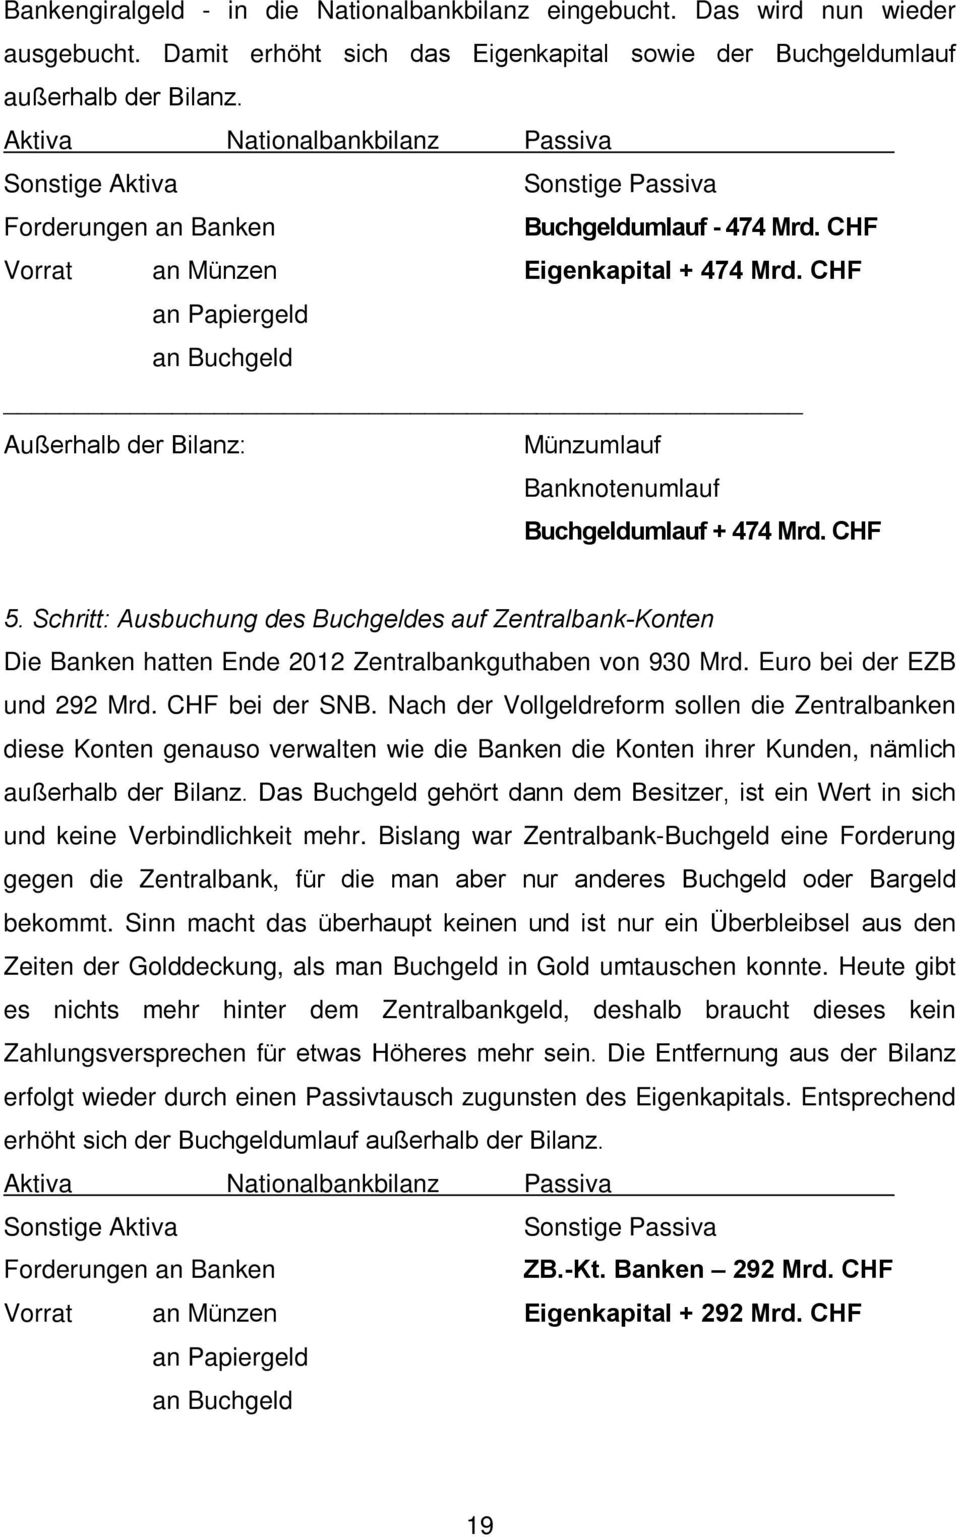 Schritt: Ausbuchung des Buchgeldes auf Zentralbank-Konten Die Banken hatten Ende 2012 Zentralbankguthaben von 930 Mrd. Euro bei der EZB und 292 Mrd. CHF bei der SNB.